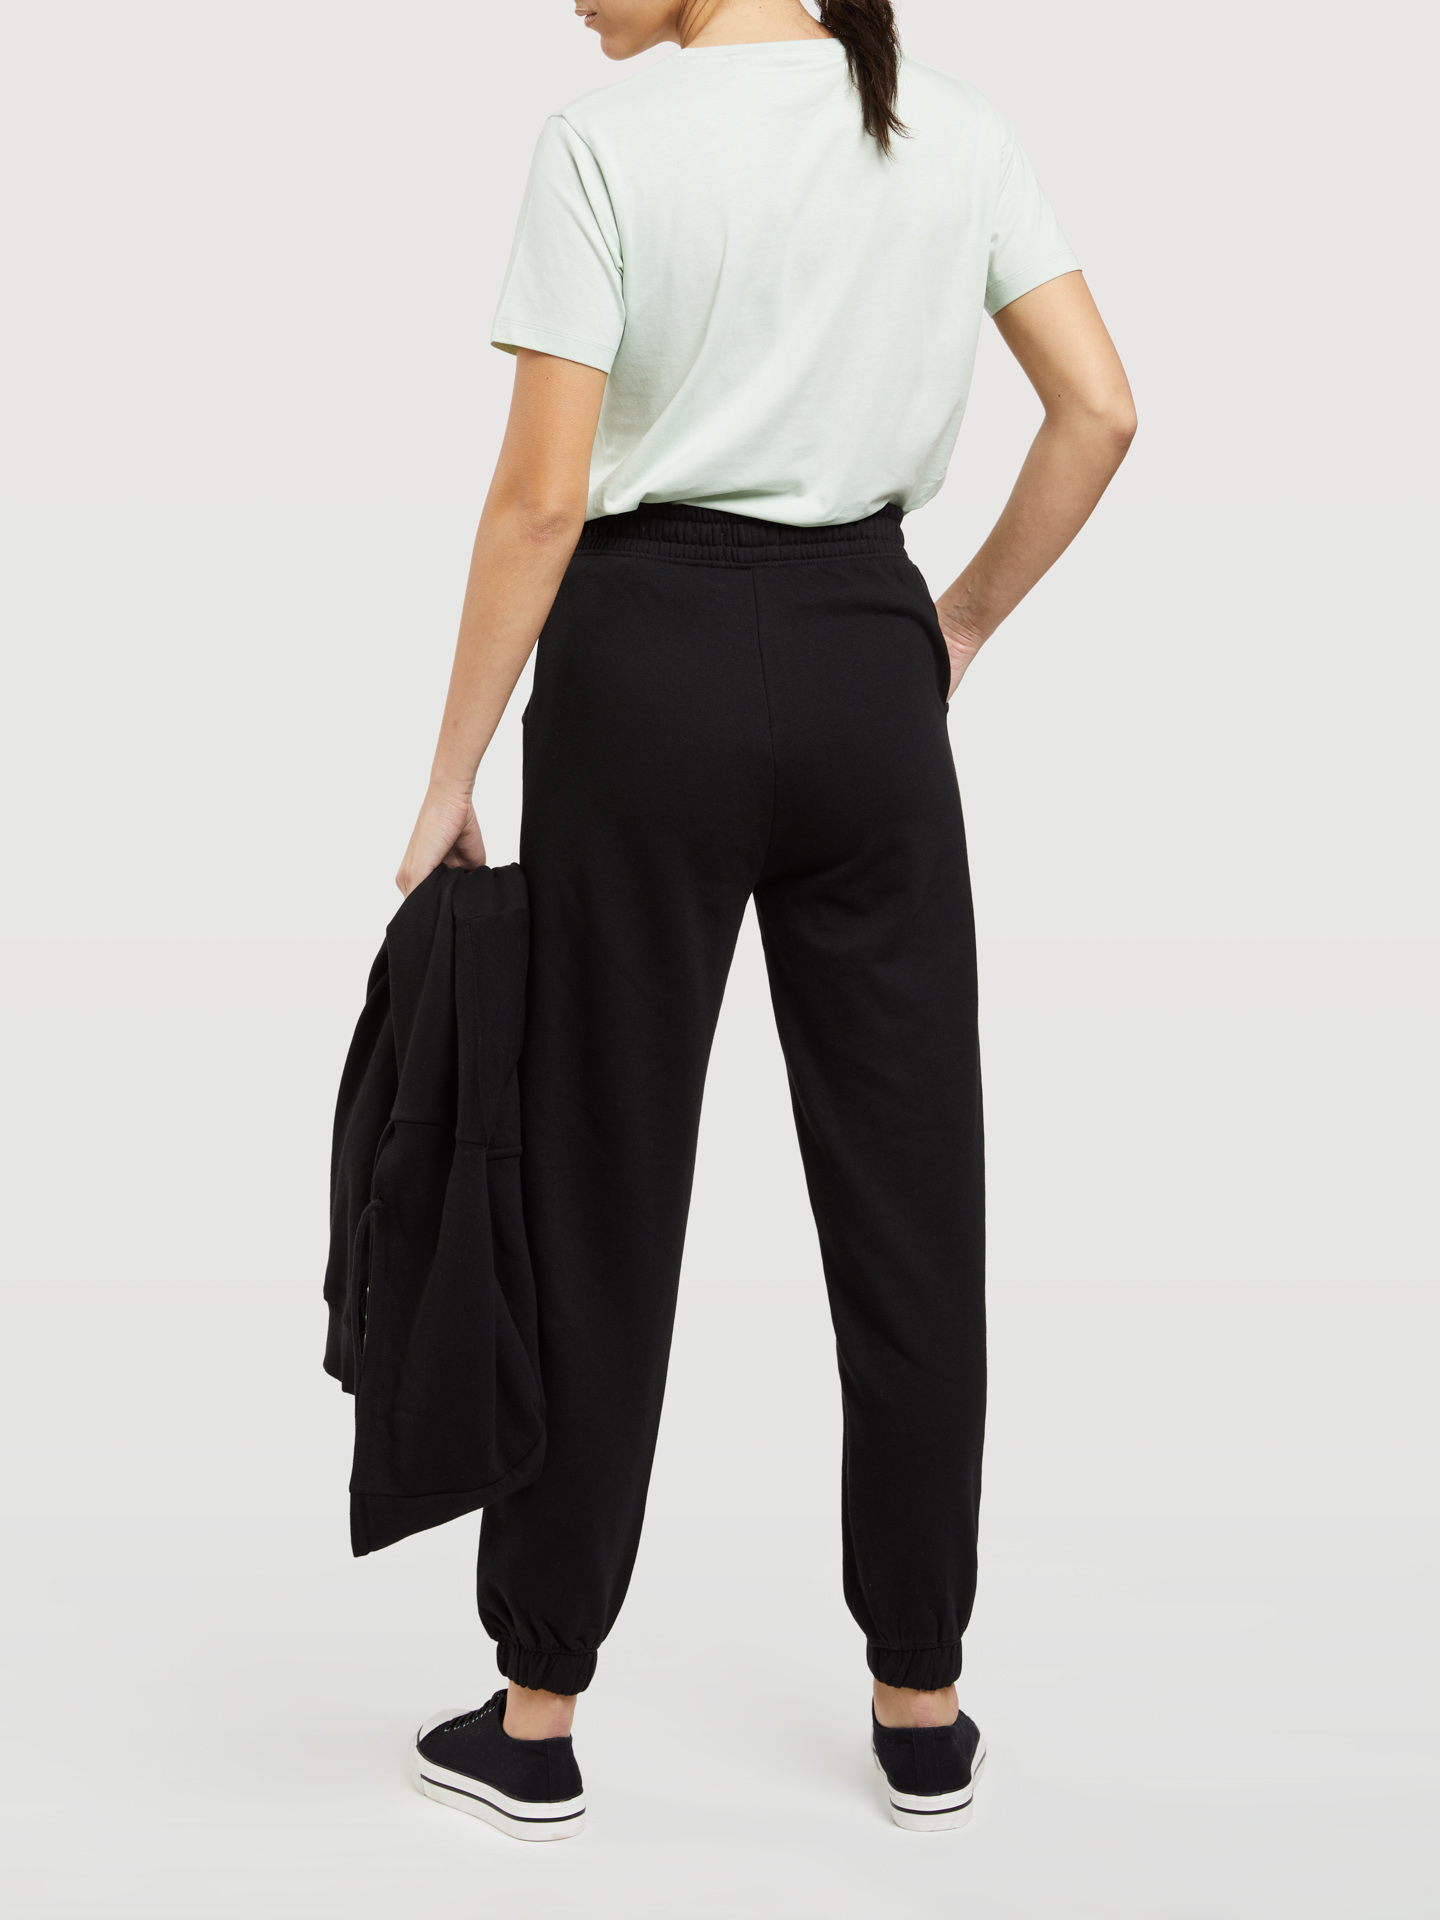 Sportswear Trousers Black Casual Woman